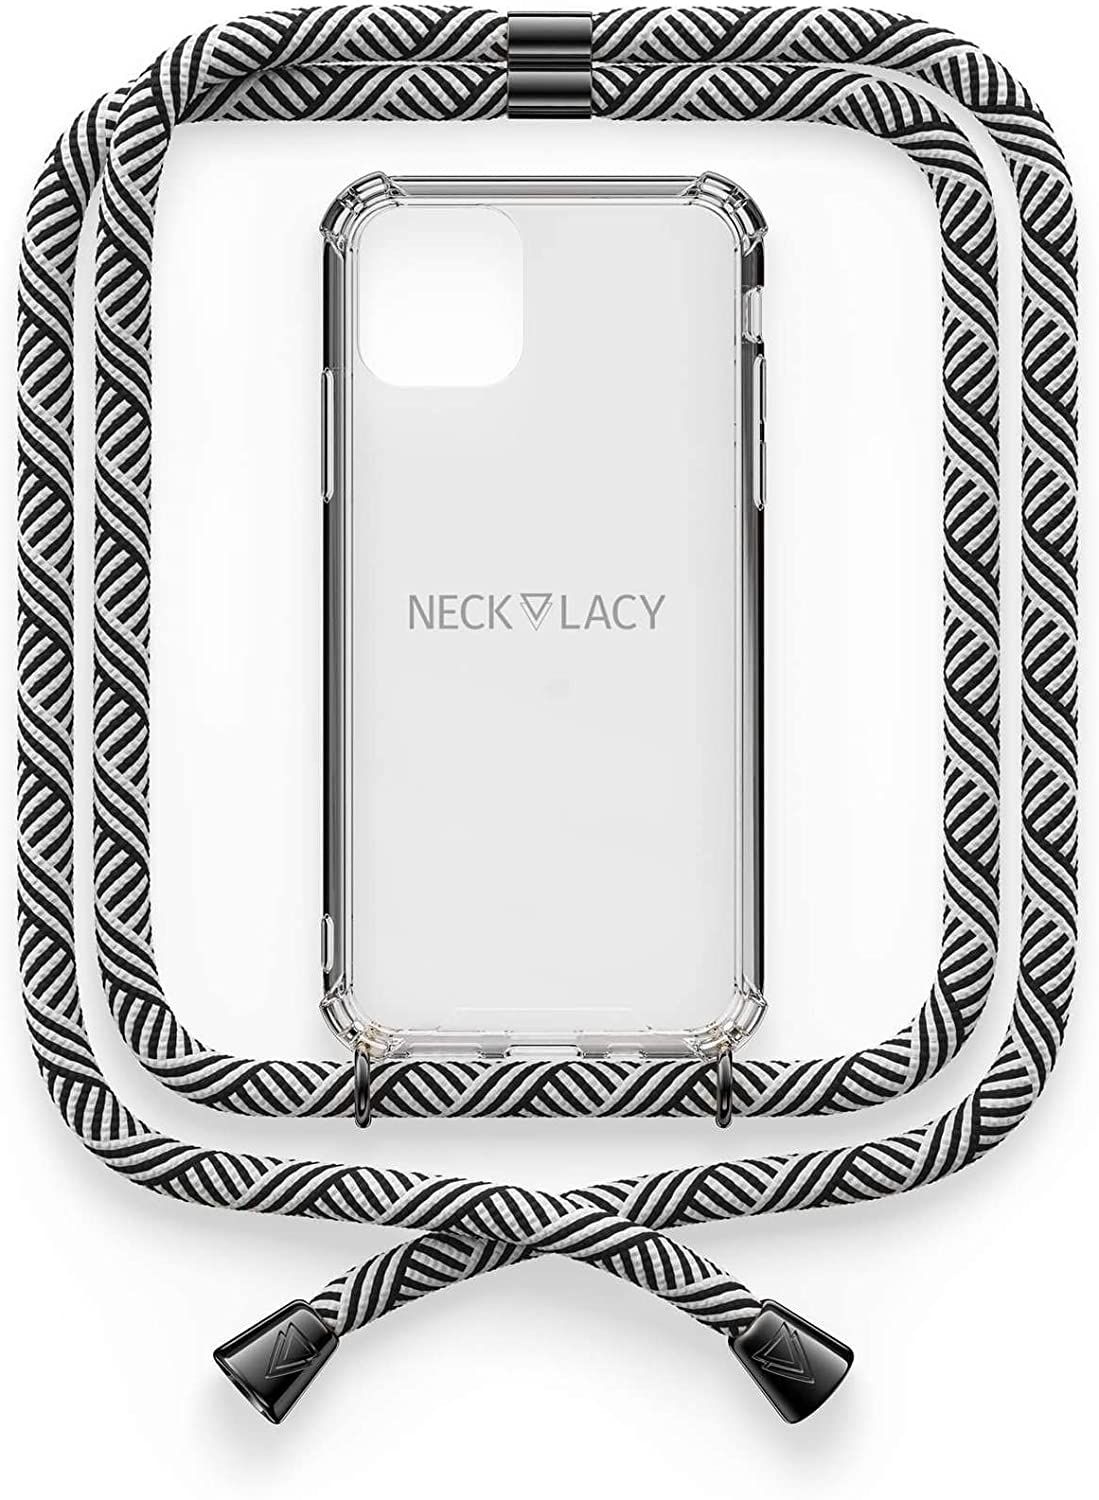 NECKLACY Handykette Handyhülle zum umhängen - für iPhone X/XS - Case / Handyhülle mit Band zum umhängen - Trageband Hals mit Kordel - Smartphone Necklace, Domino Swirl Gunmetal